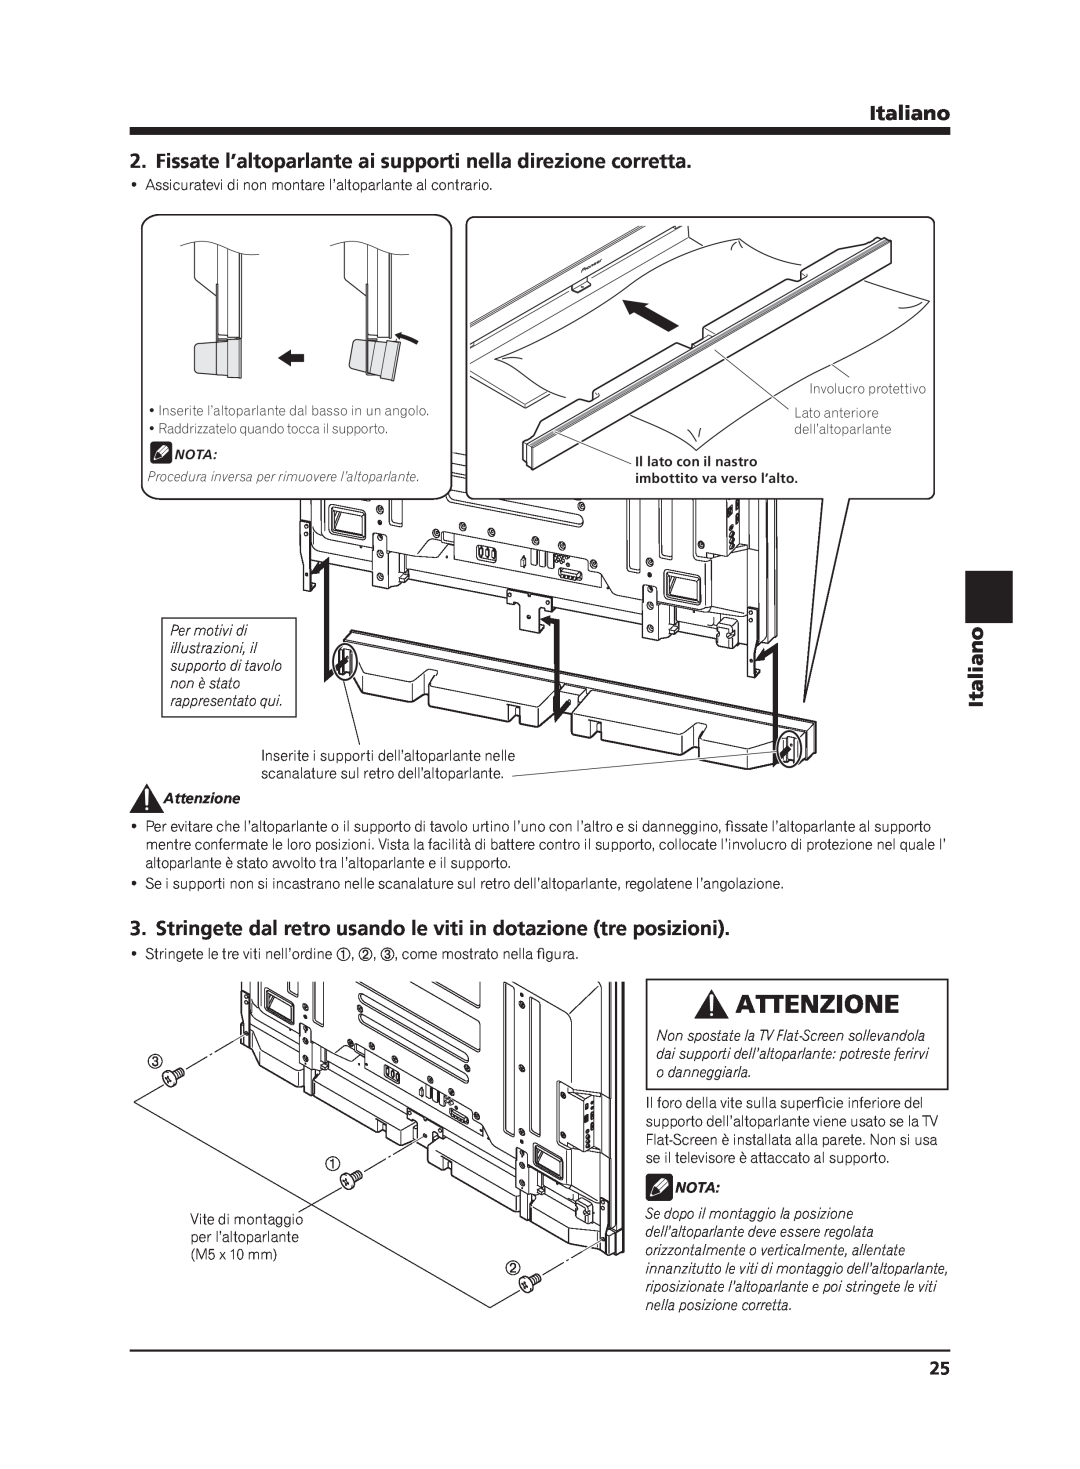 Pioneer PDP-S65 manual Attenzione, Italiano, o danneggiarla, Il foro della vite sulla superﬁcie inferiore del, Nota 